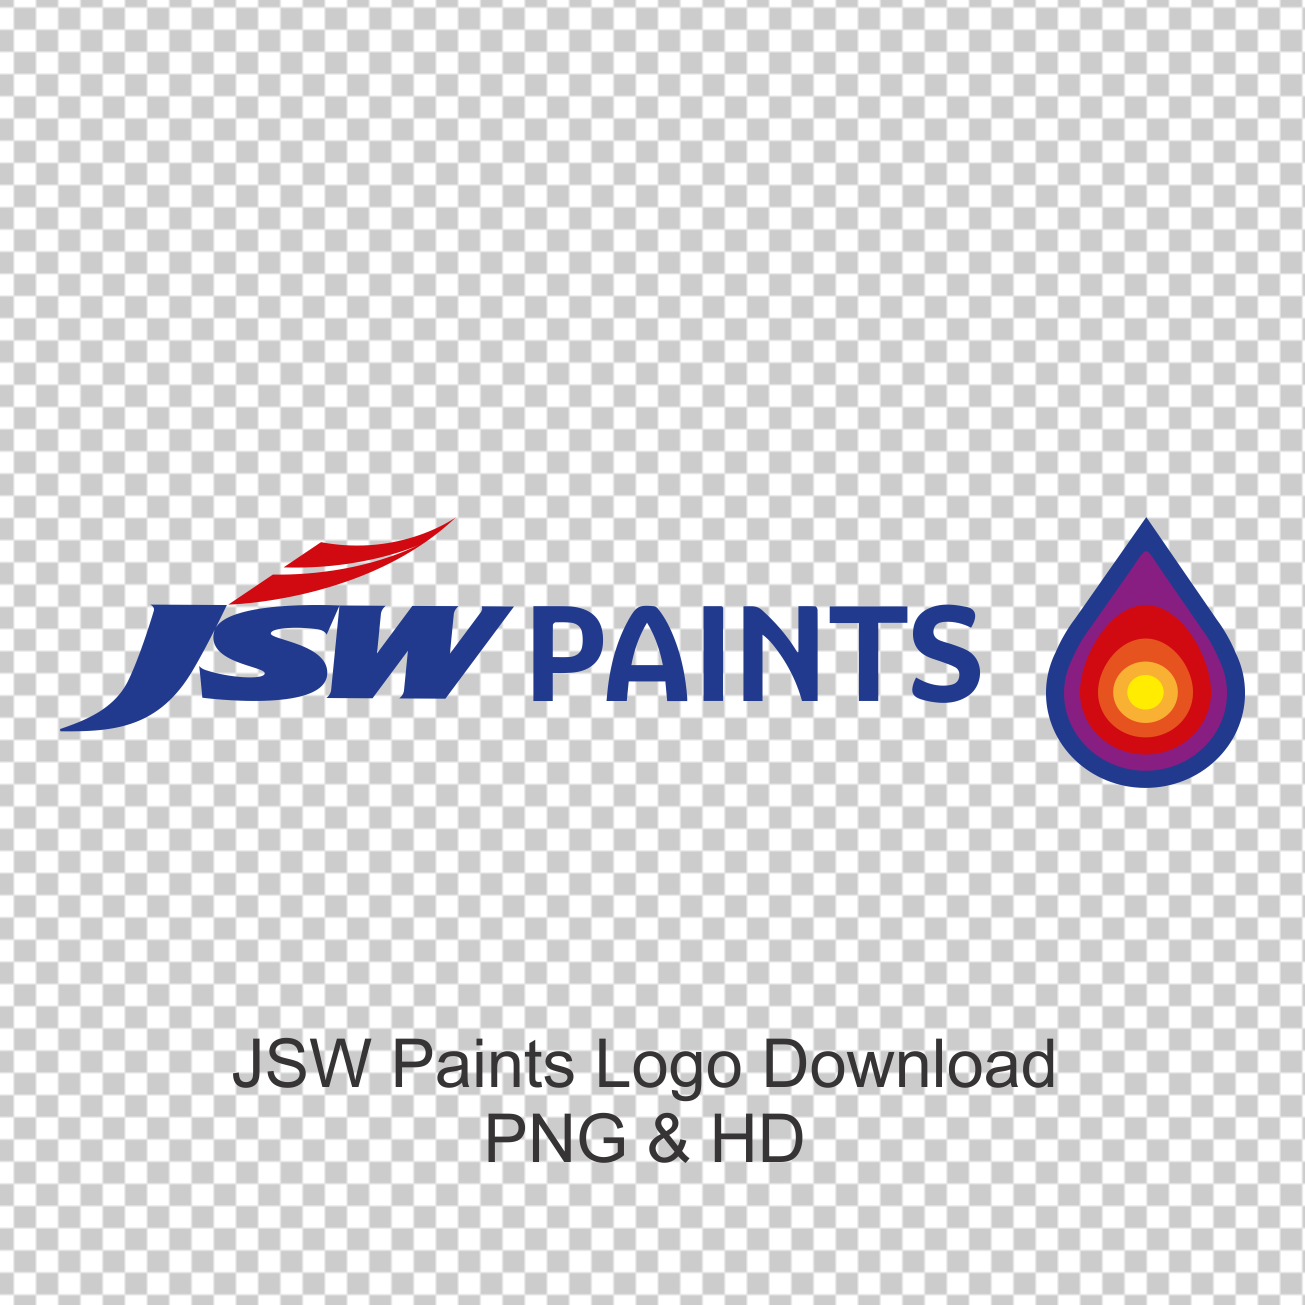 JSW-Paints-Logo-PNG